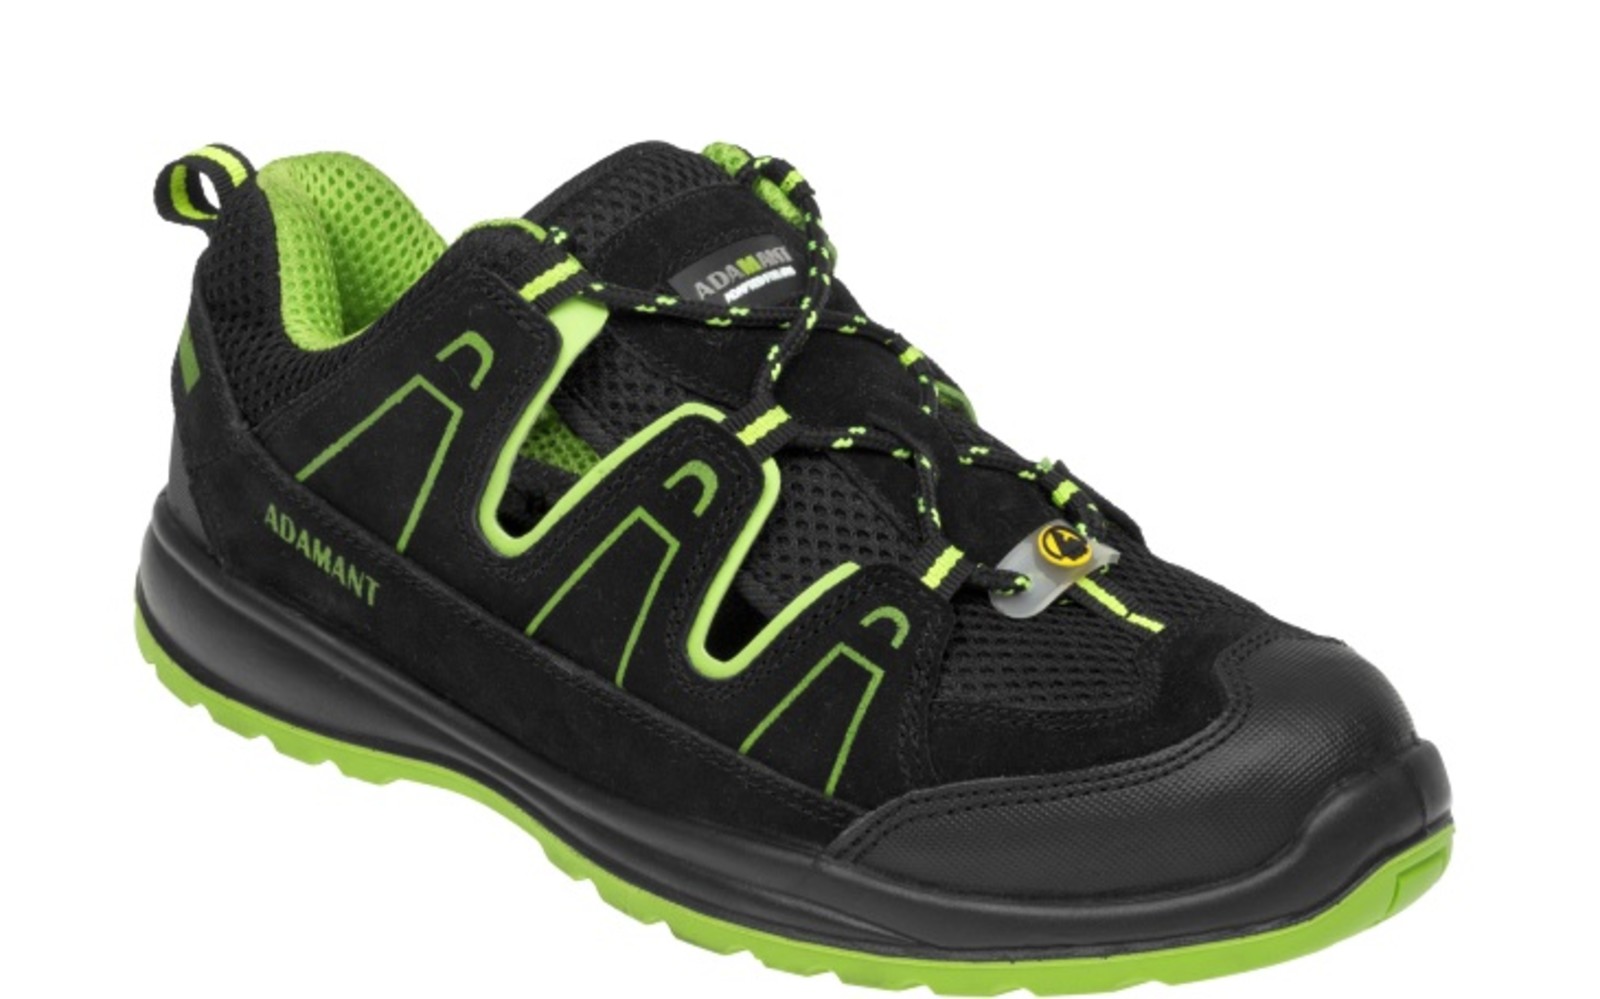 Bezpečnostné sandále Adamant Alegro S1 ESD - veľkosť: 44, farba: čierna/zelená